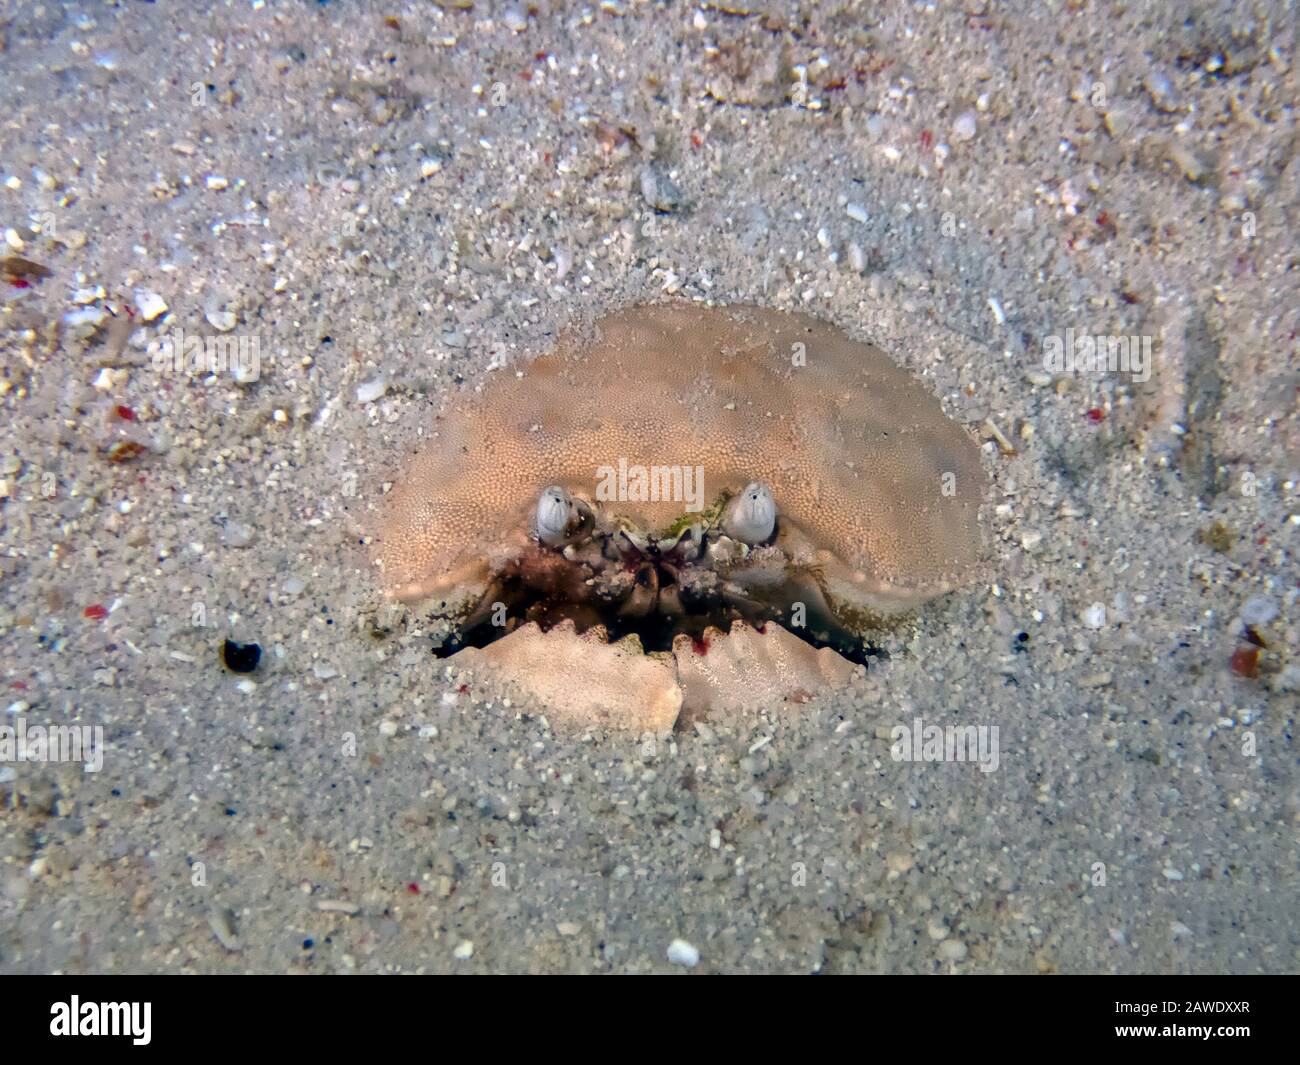 Smooth Box Crab (Calappa calappa) Stock Photo